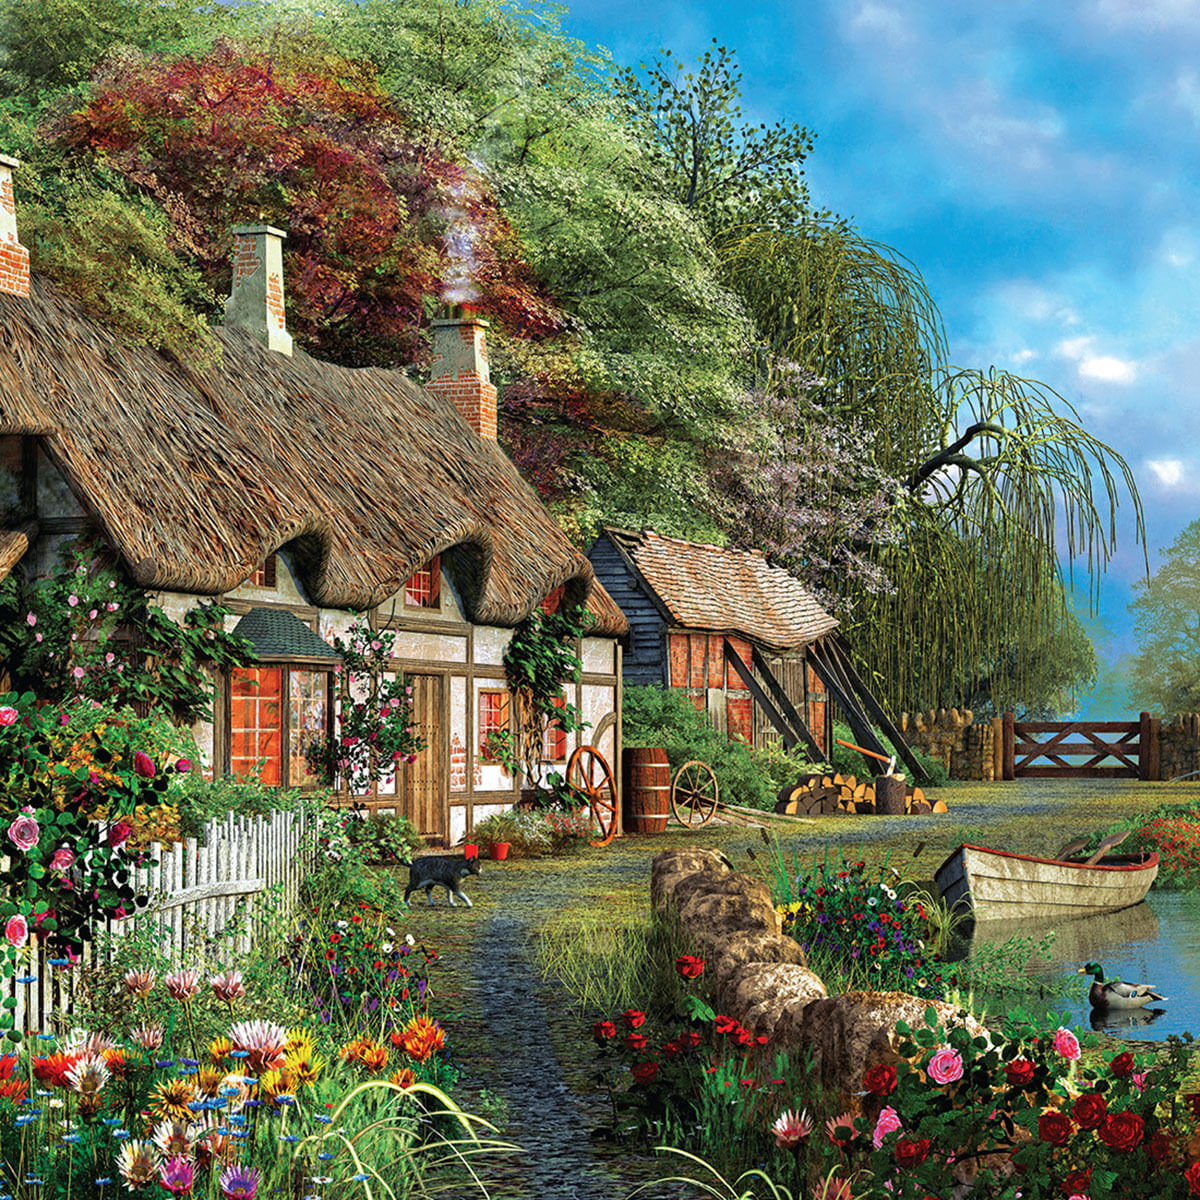 Quebra-cabeça Casa no Lago: paisagem encantadora em 1000 peças